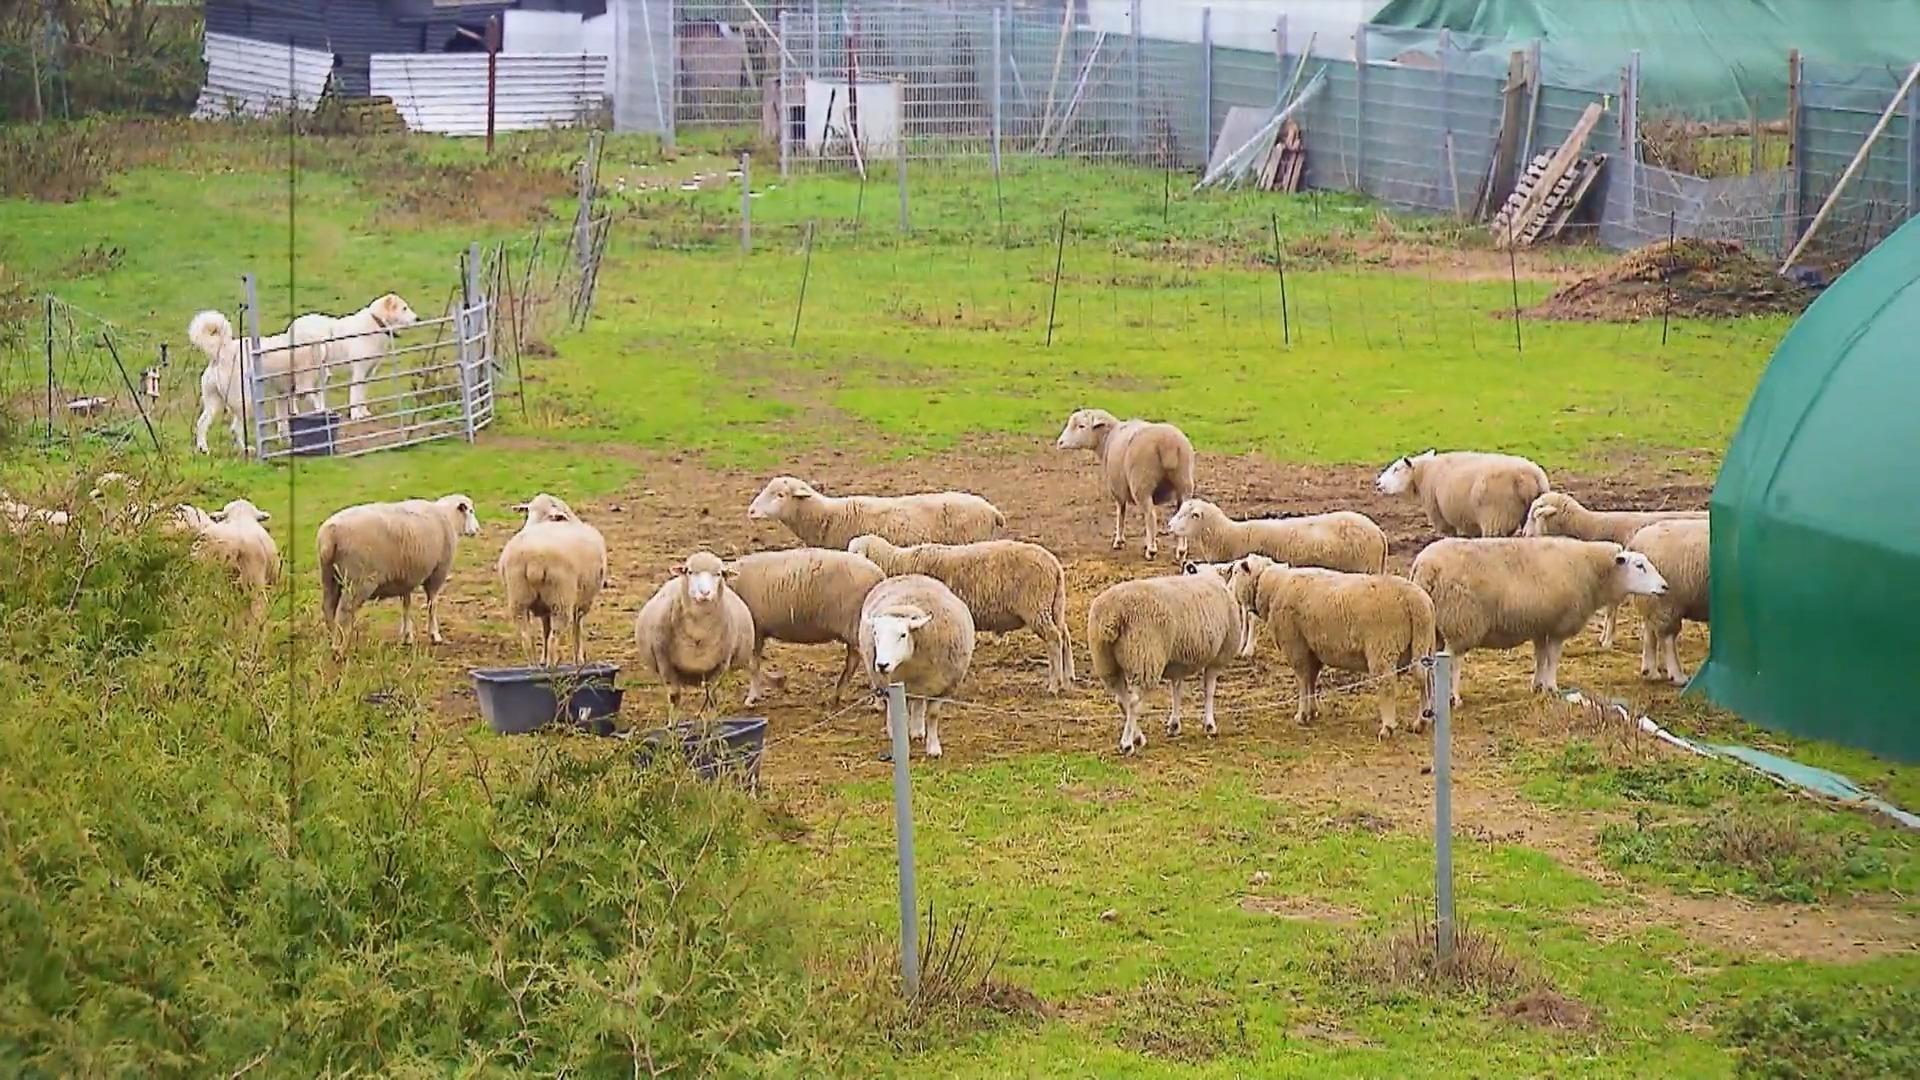 Hütehunde von Schafsherde führen zu Streit vor Gericht Nachbarschaftsstreit